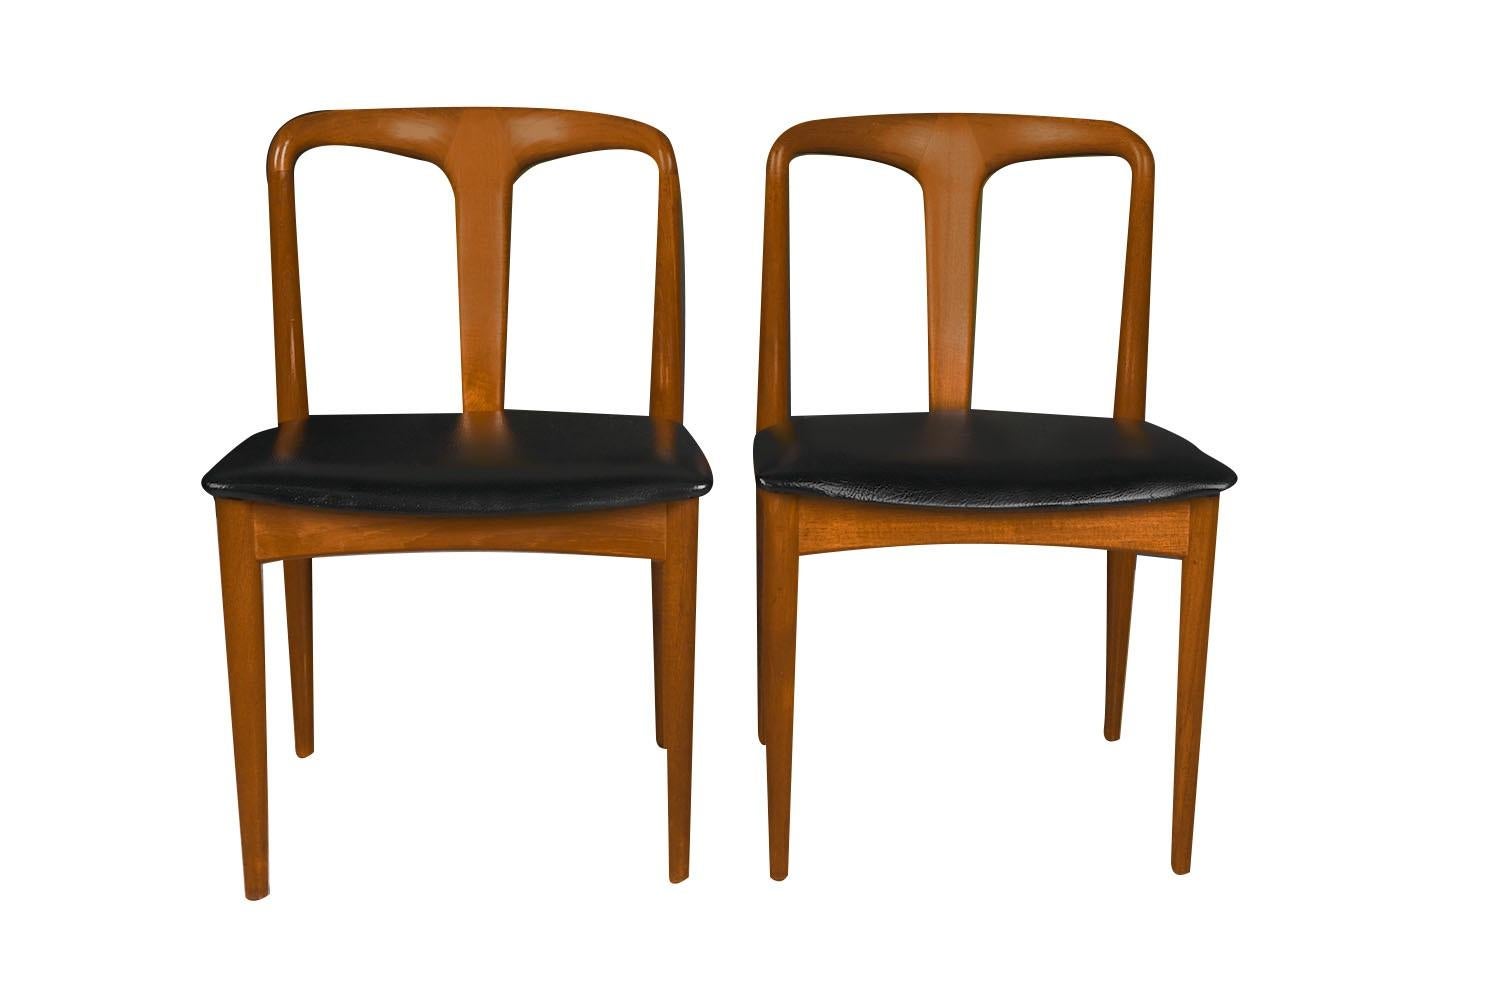 Ein schönes Paar moderne dänische Esstischstühle 'Juliane' aus Teakholz von dem berühmten Designer Johannes Andersen für Uldum Møbelfabrik, hergestellt in Dänemark, ca. 1960er Jahre. Die aus massivem Teakholz gefertigten Rahmen und die geschnitzten